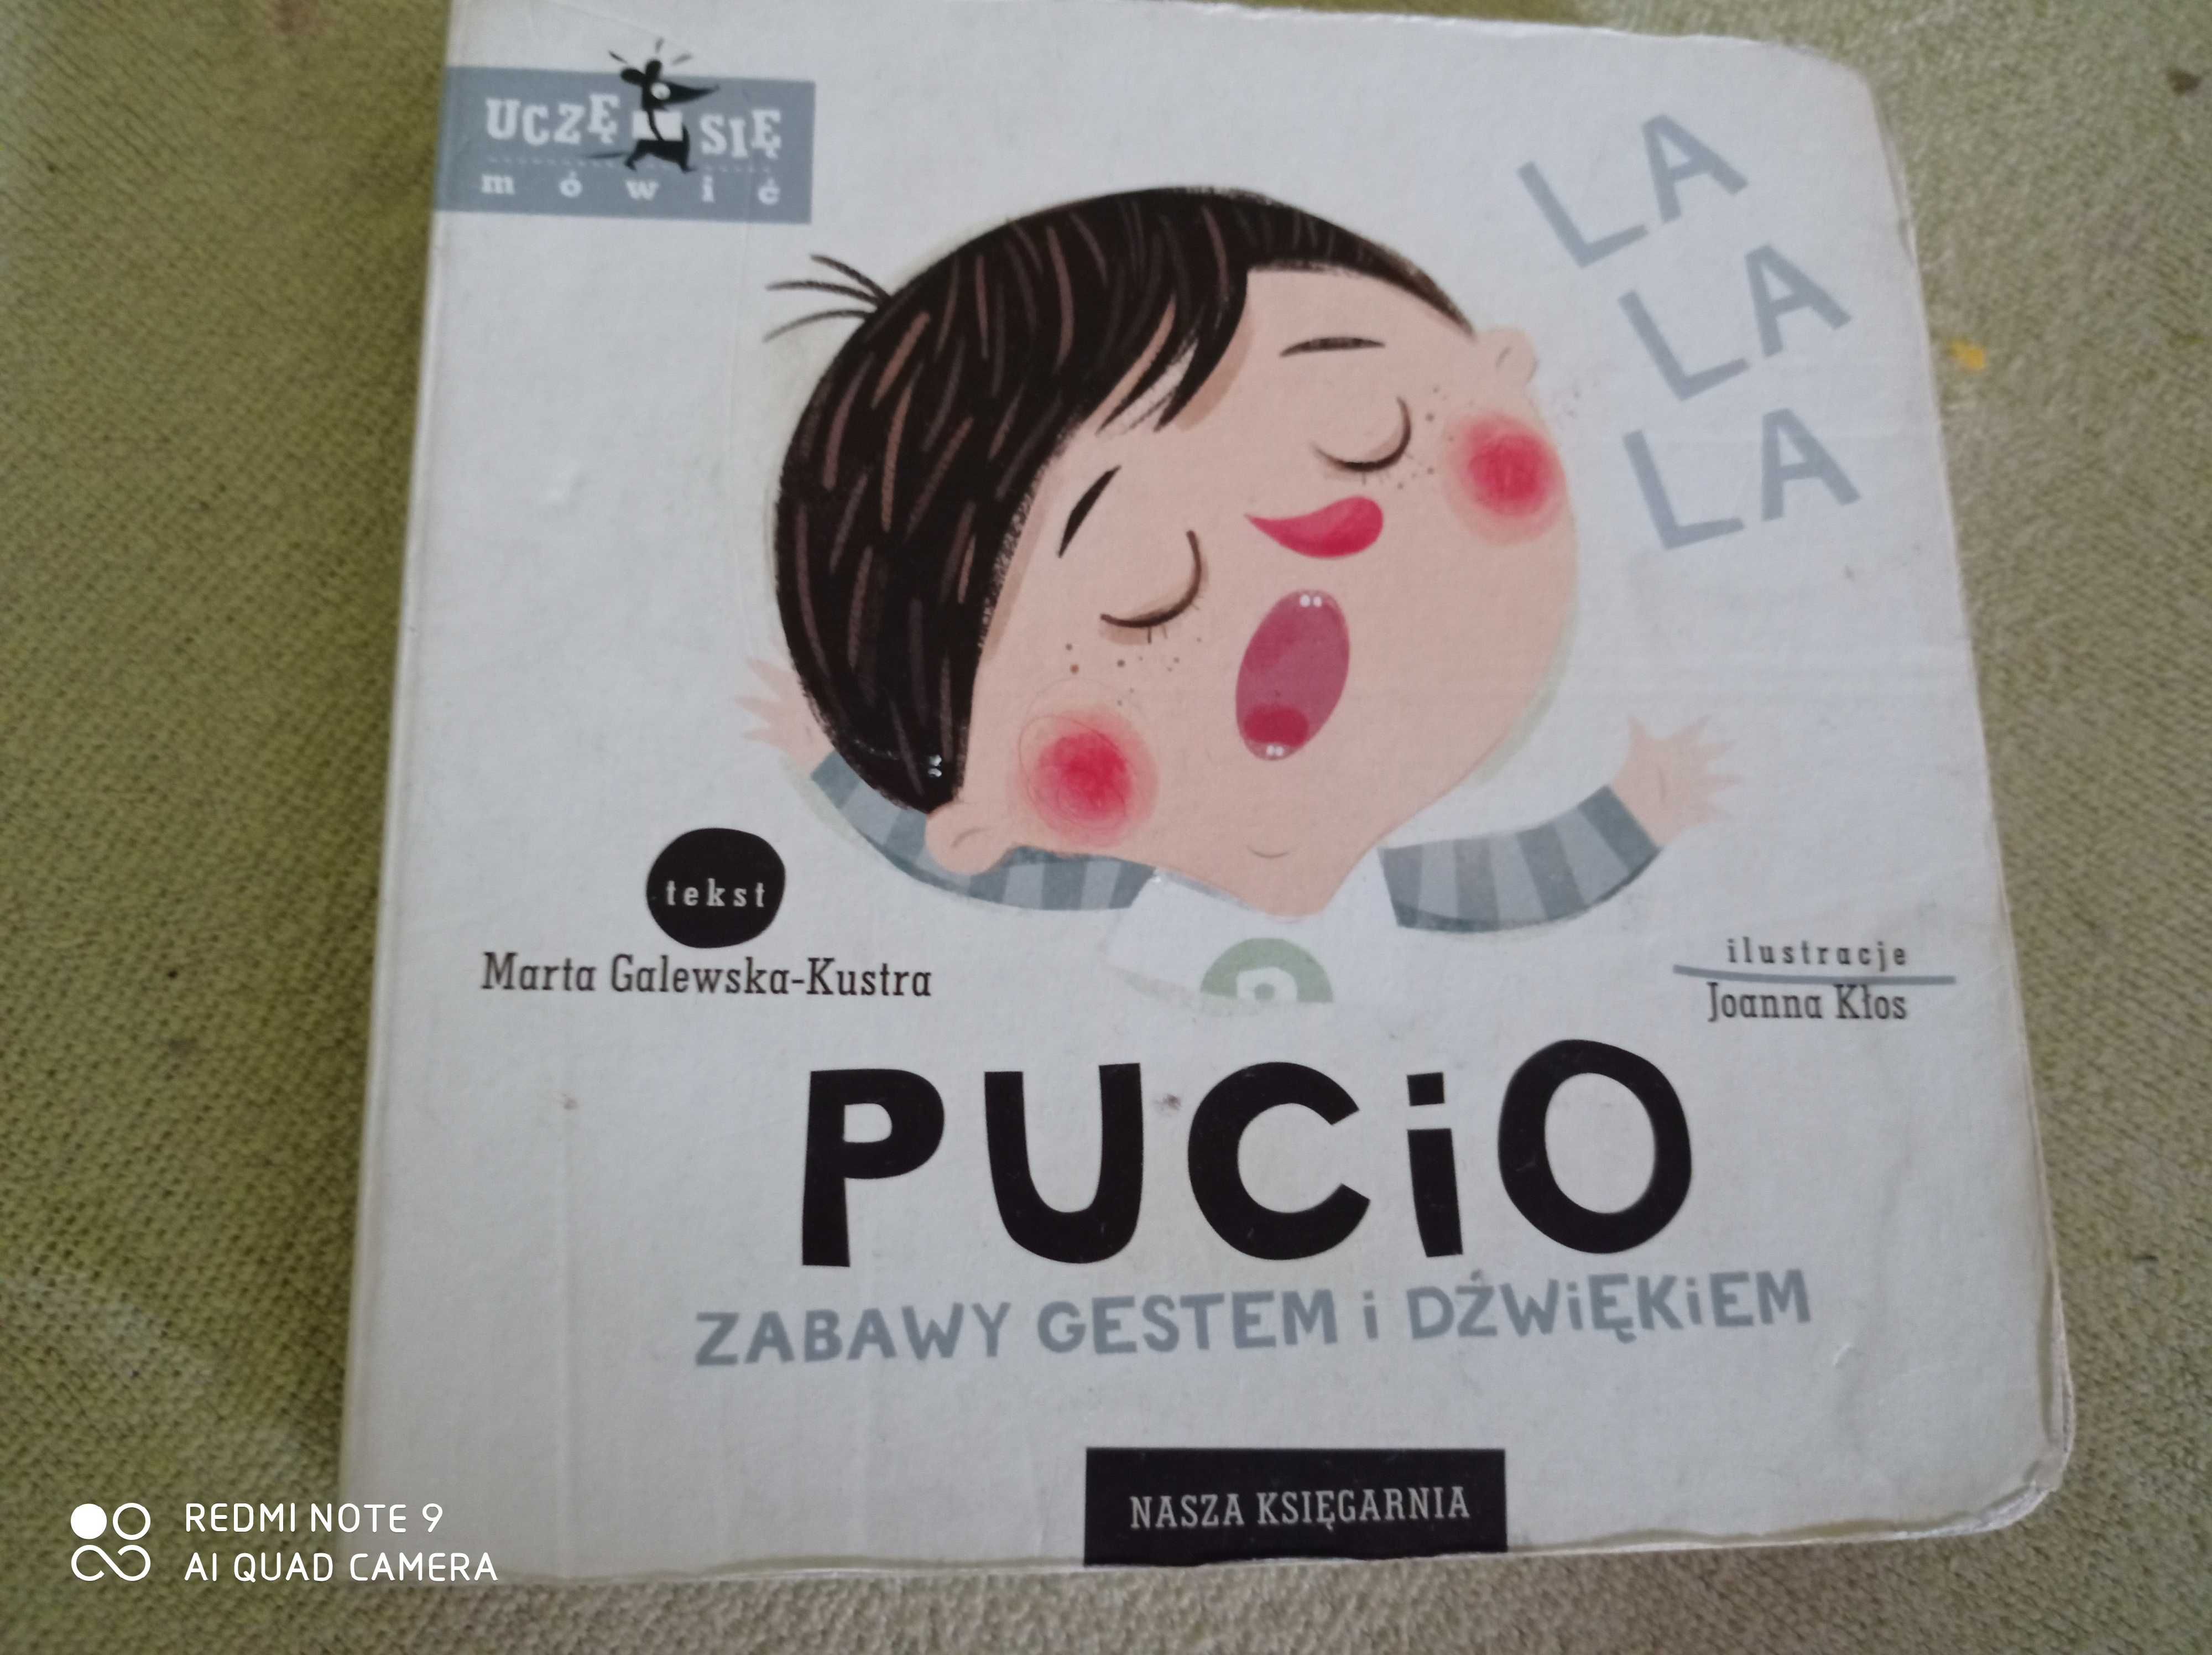 Książki dla dzieci z serii "Pucio"